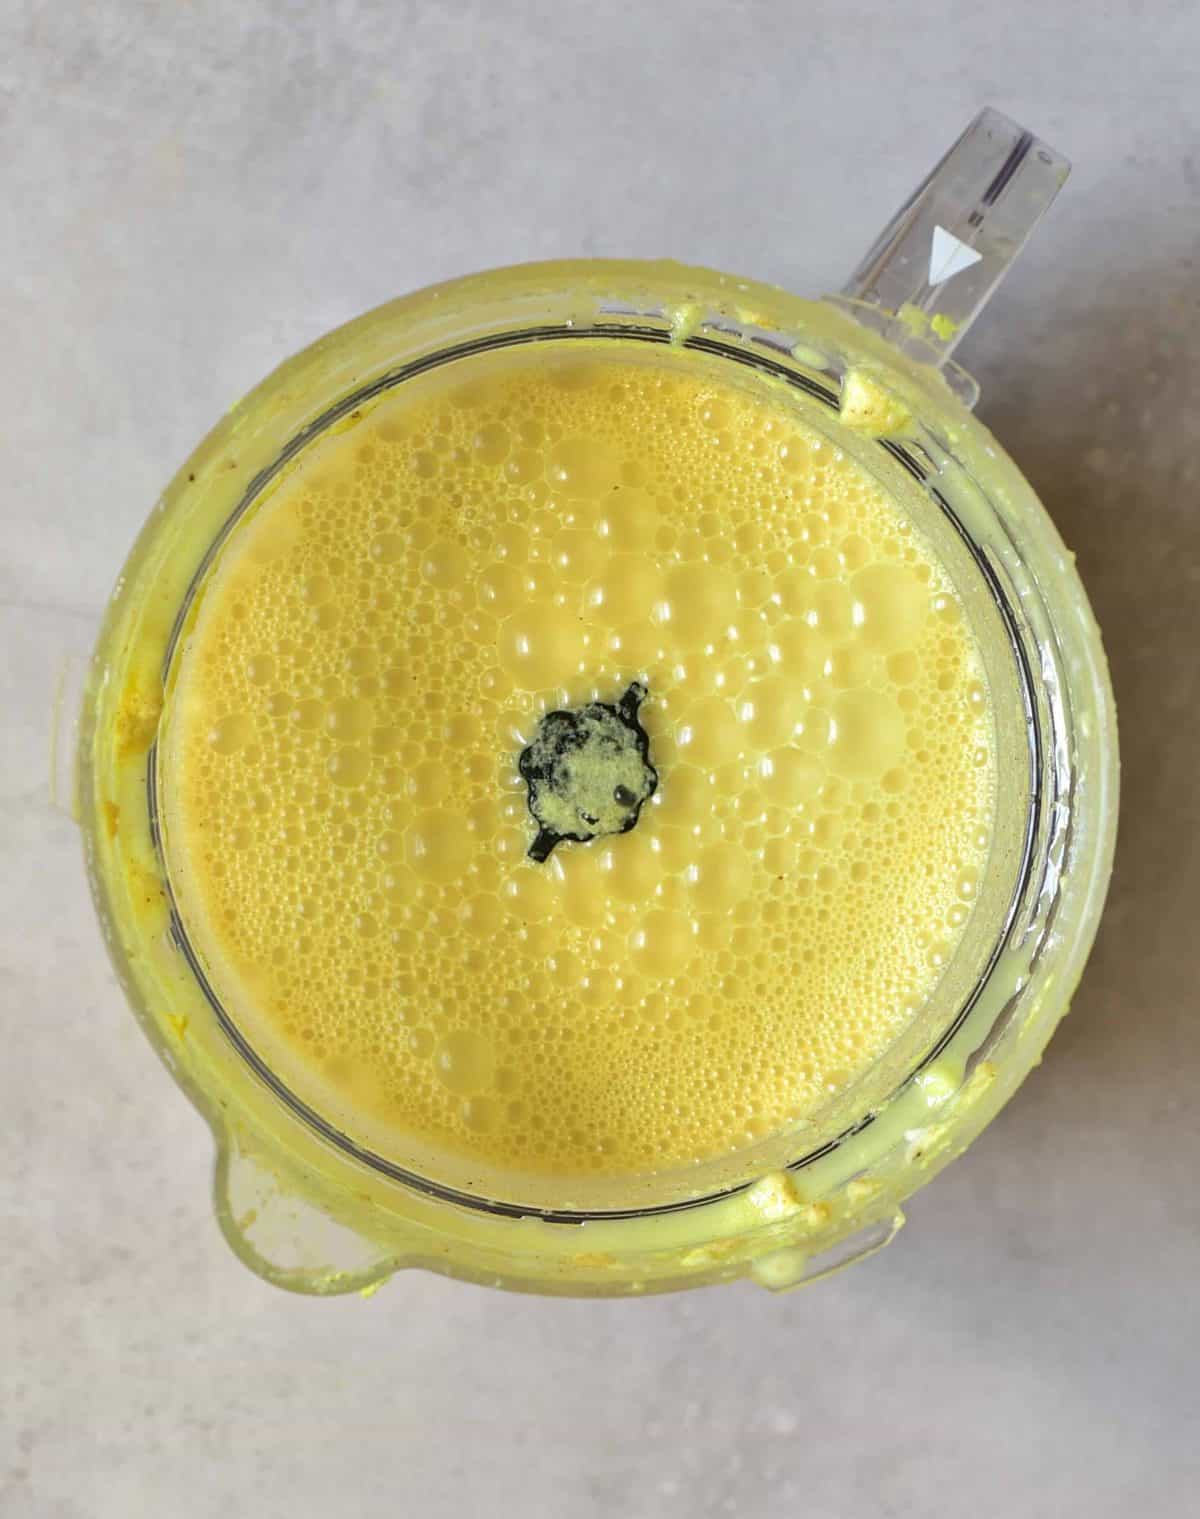 Golden milk - freshly made in a blender